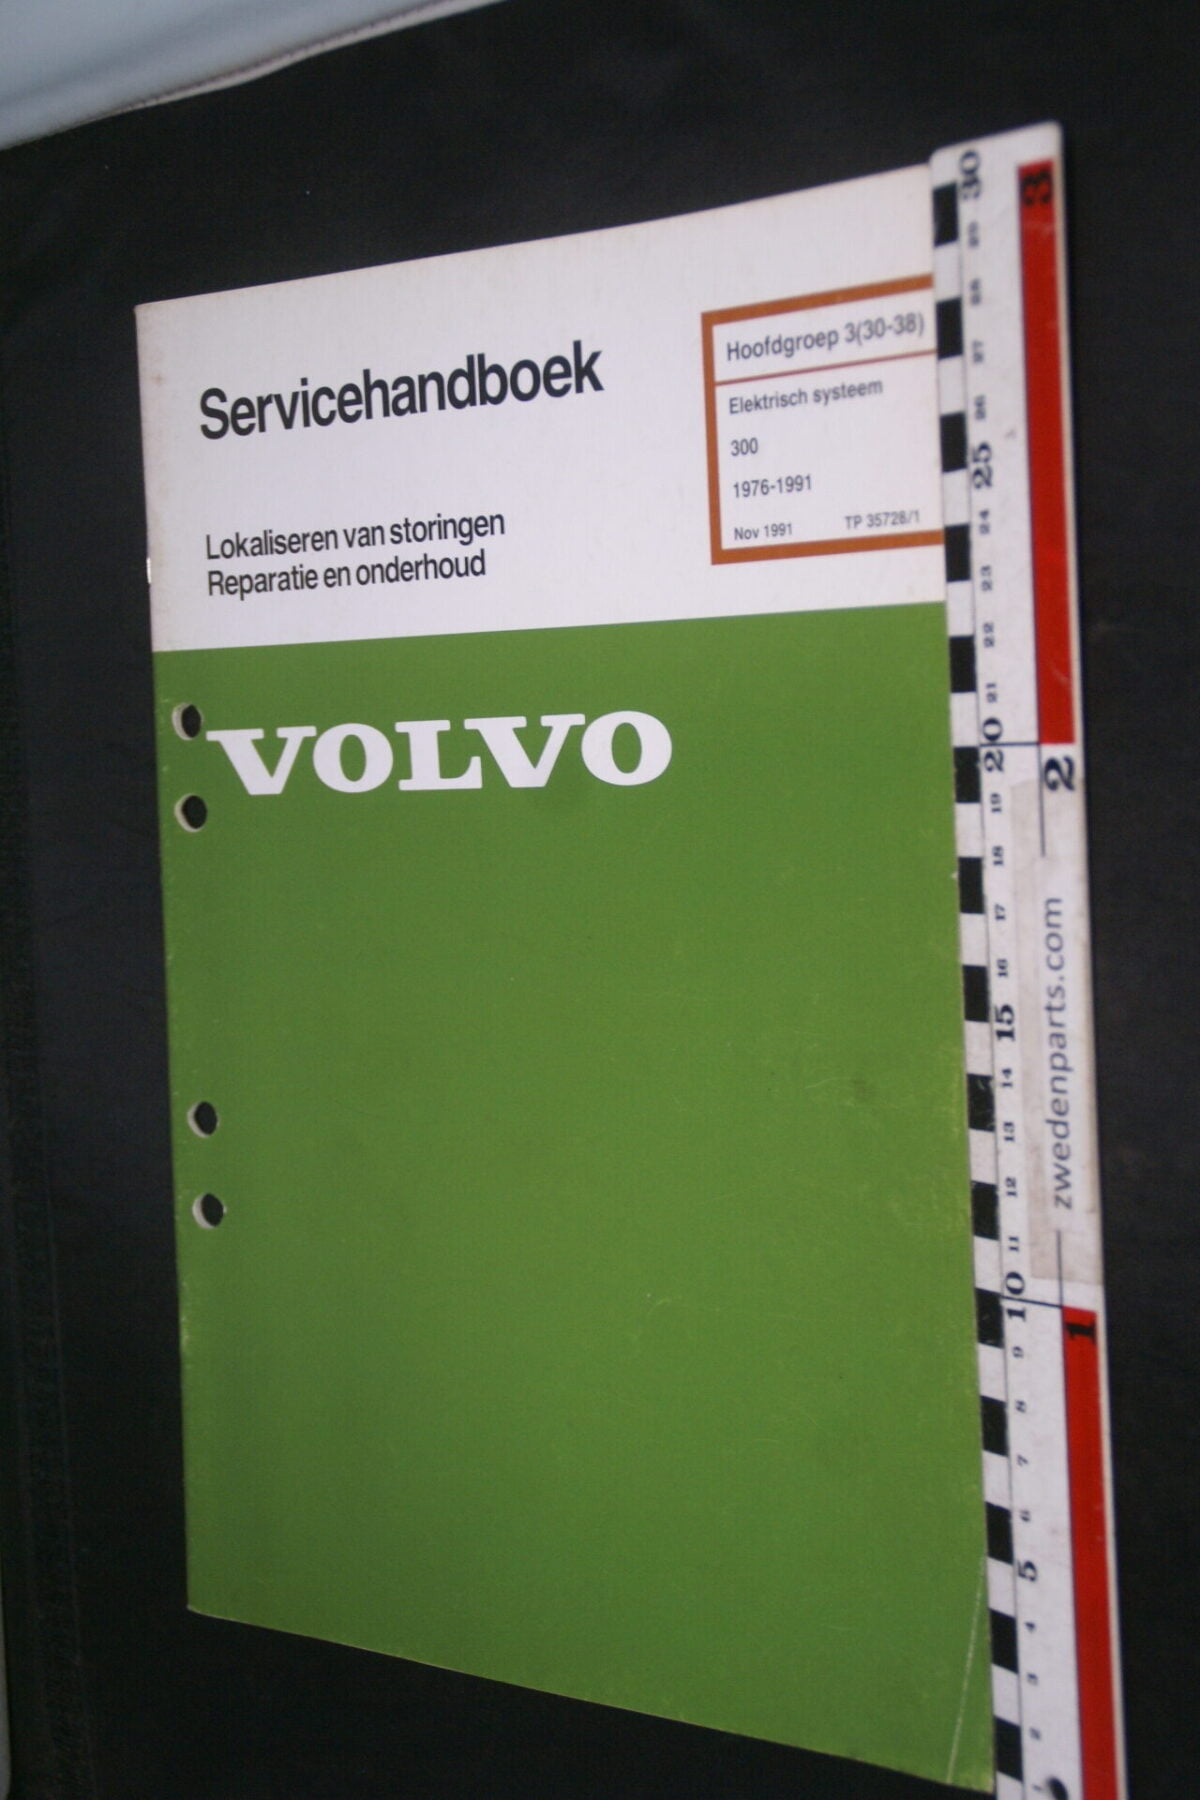 DSC09024 1991 origineel  Volvo 300 servicehandboek electrisch systeem 3 (30-38)  1 van 1.000 nr TP 35728-1